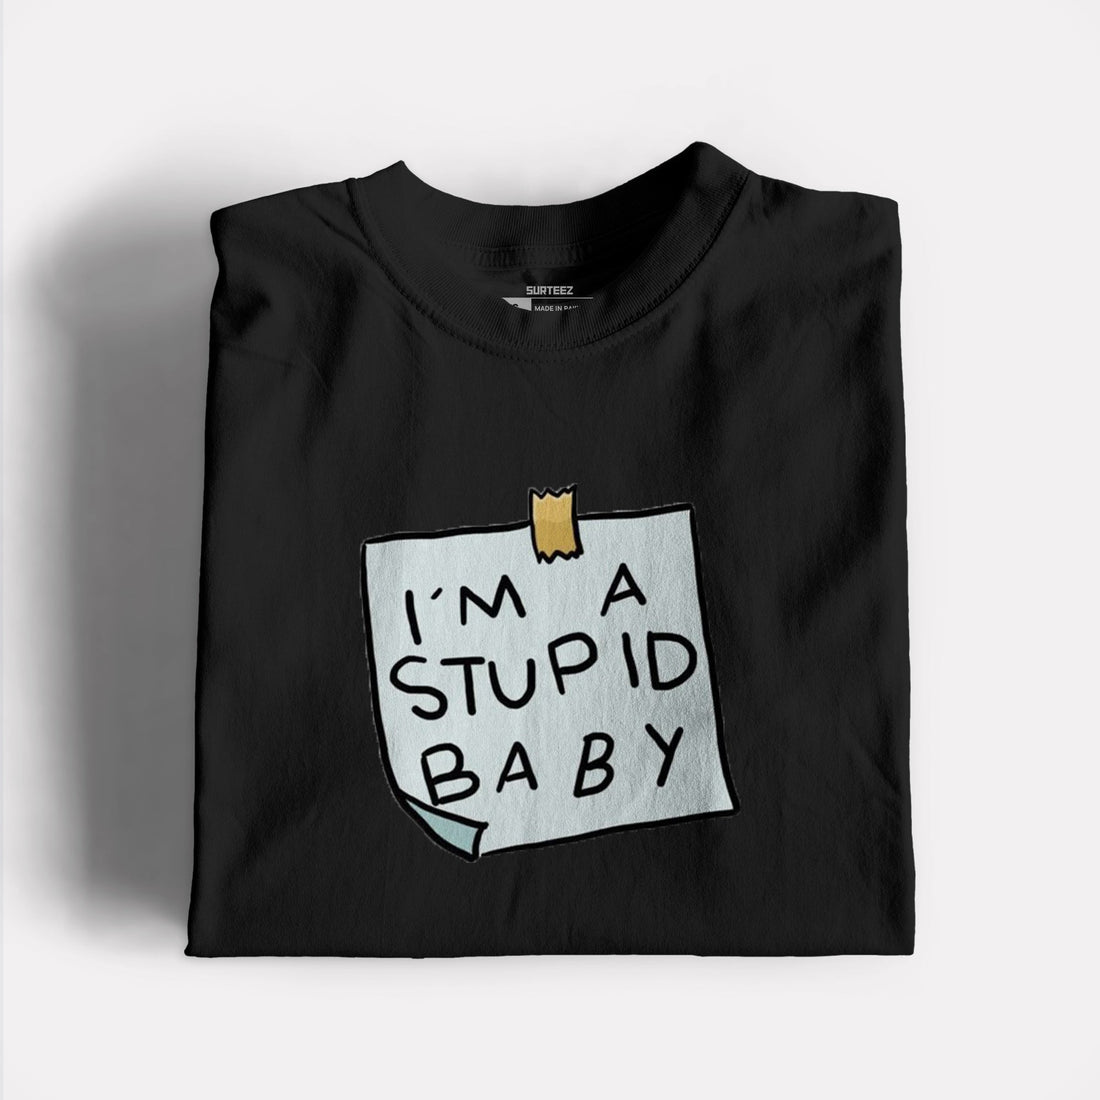 Stupid Graphic Tshirt